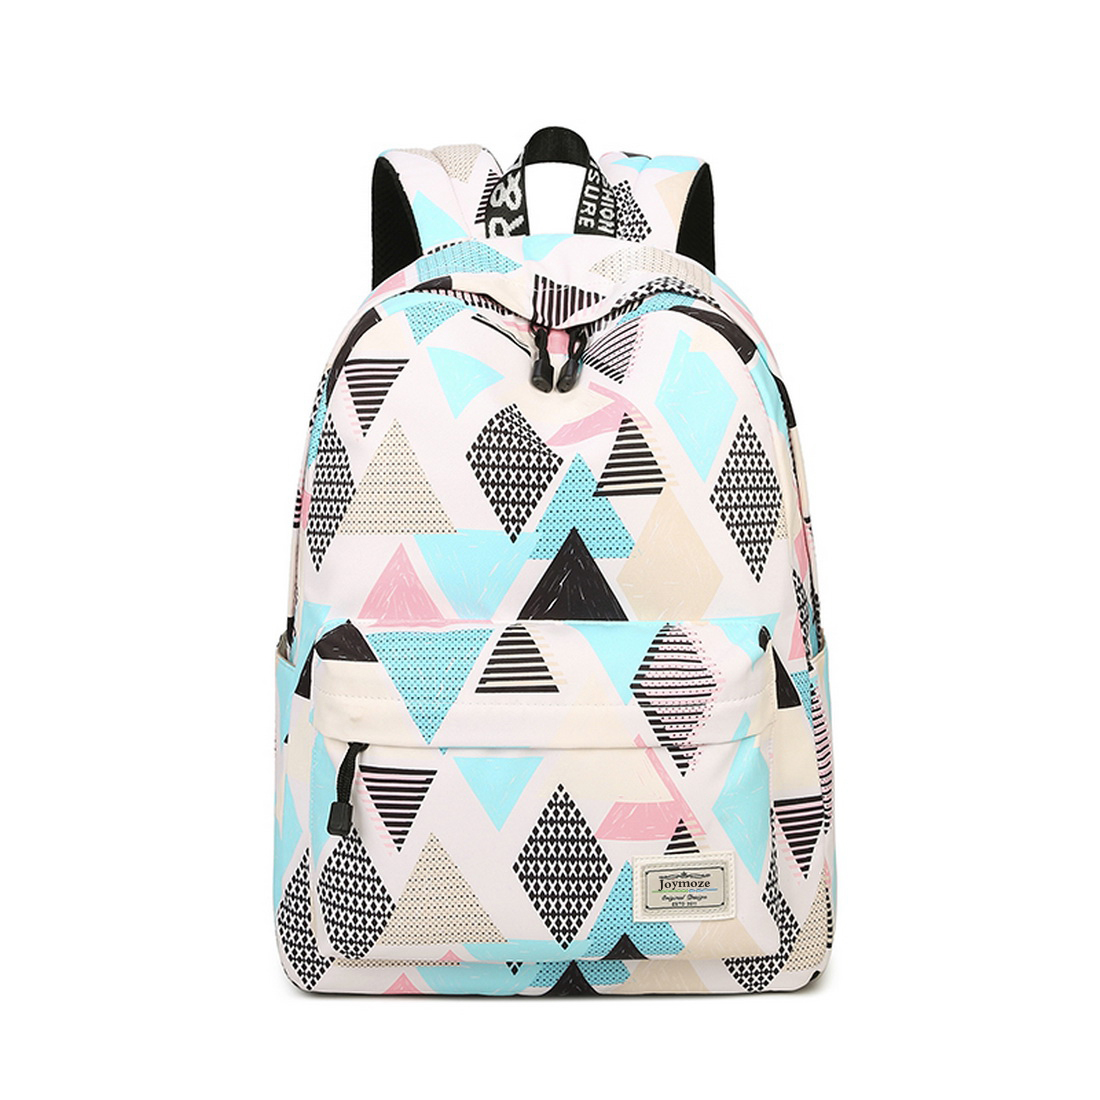 School Backpack Joymoze Waterproof School Backpack For Girls